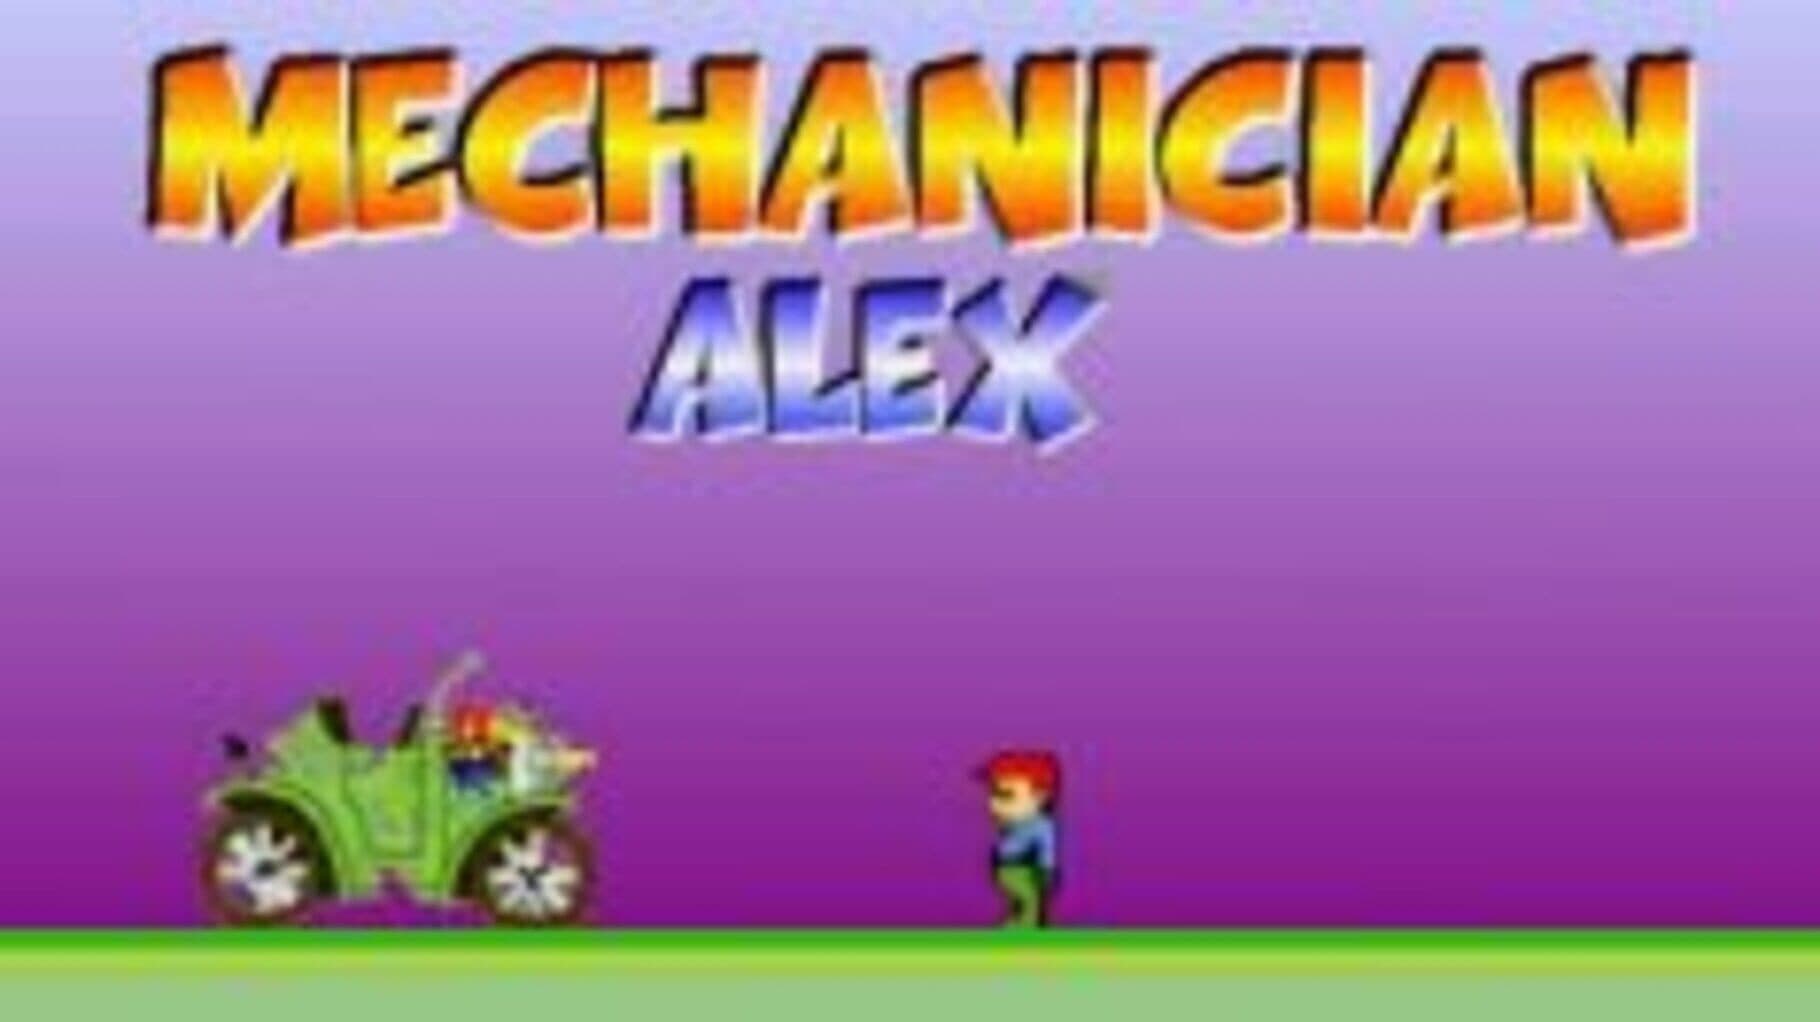 Mechanician Alex cover art